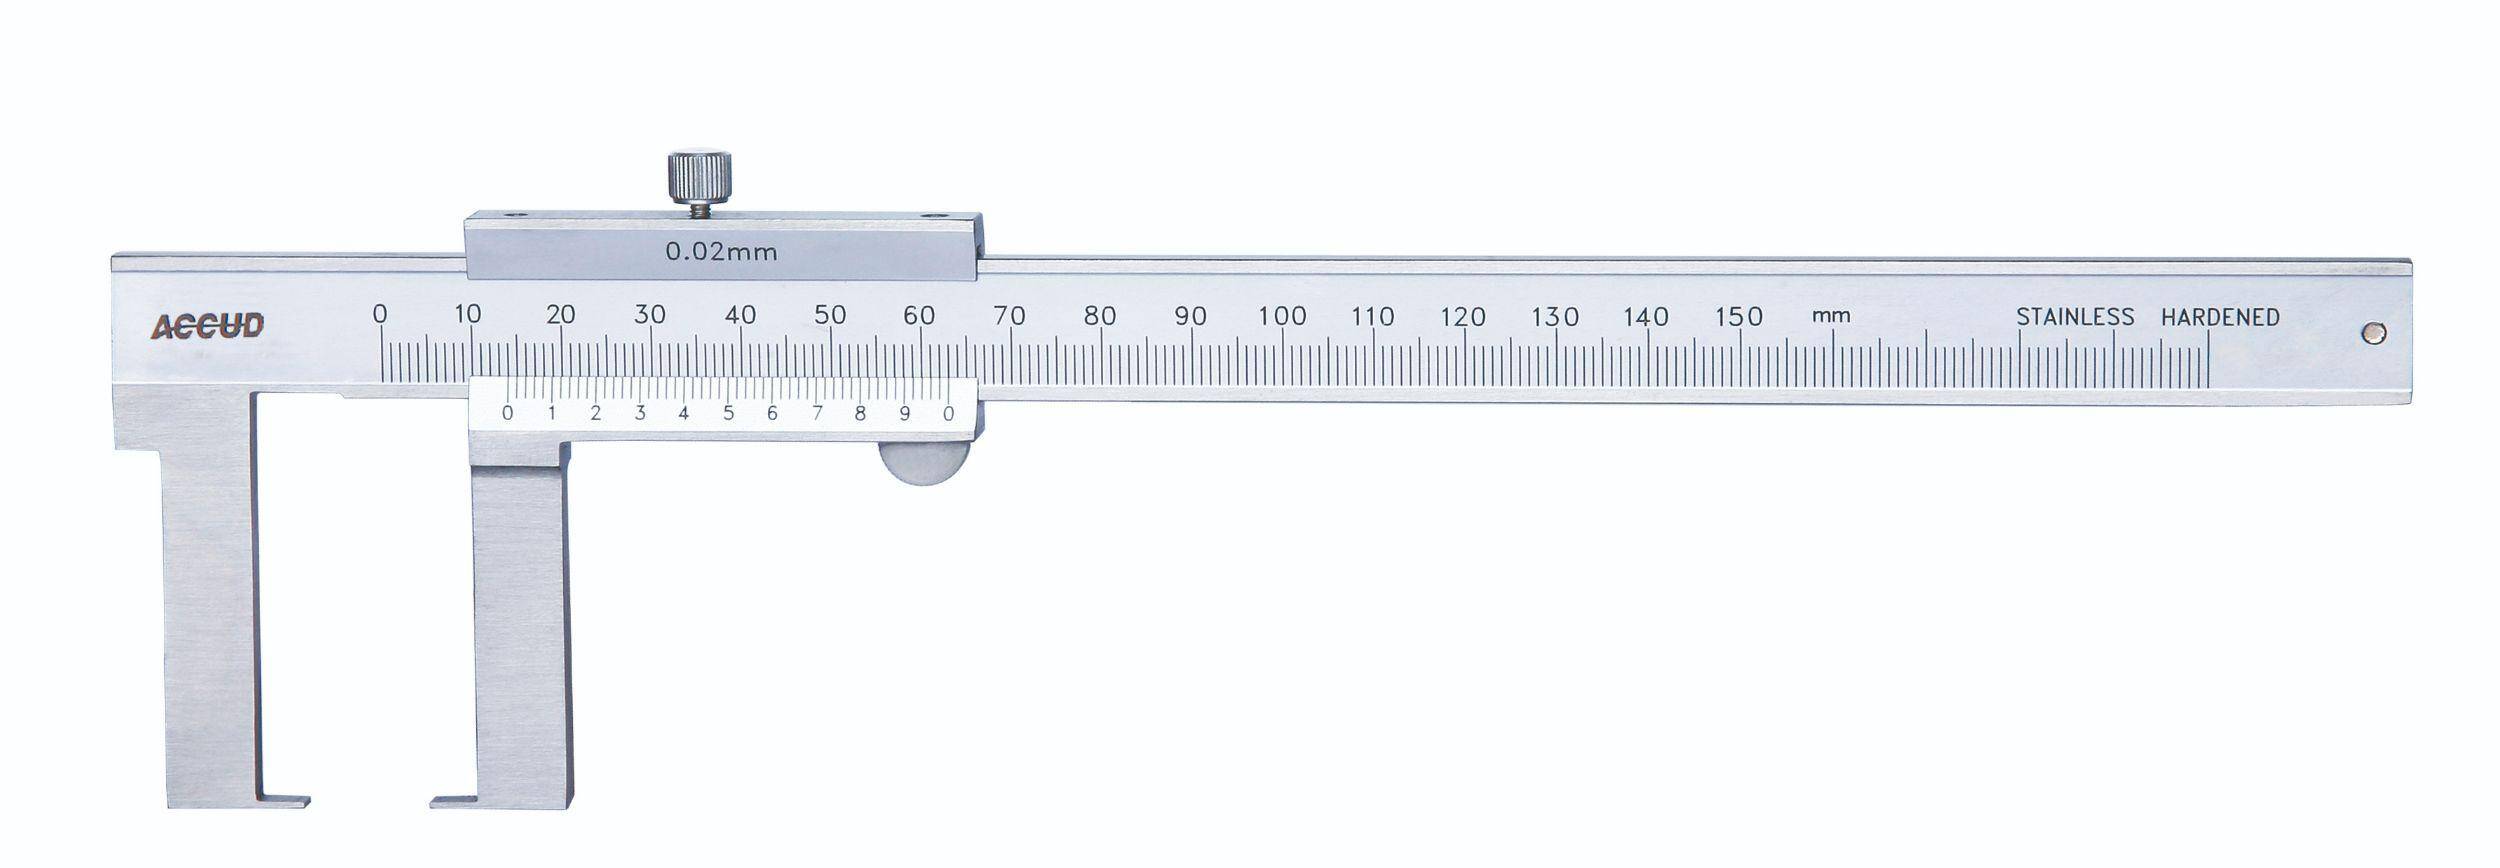 ACCUD suwmiarka analogowa 150/0,02 mm do pomiarów zewnętrznych 143-006-11